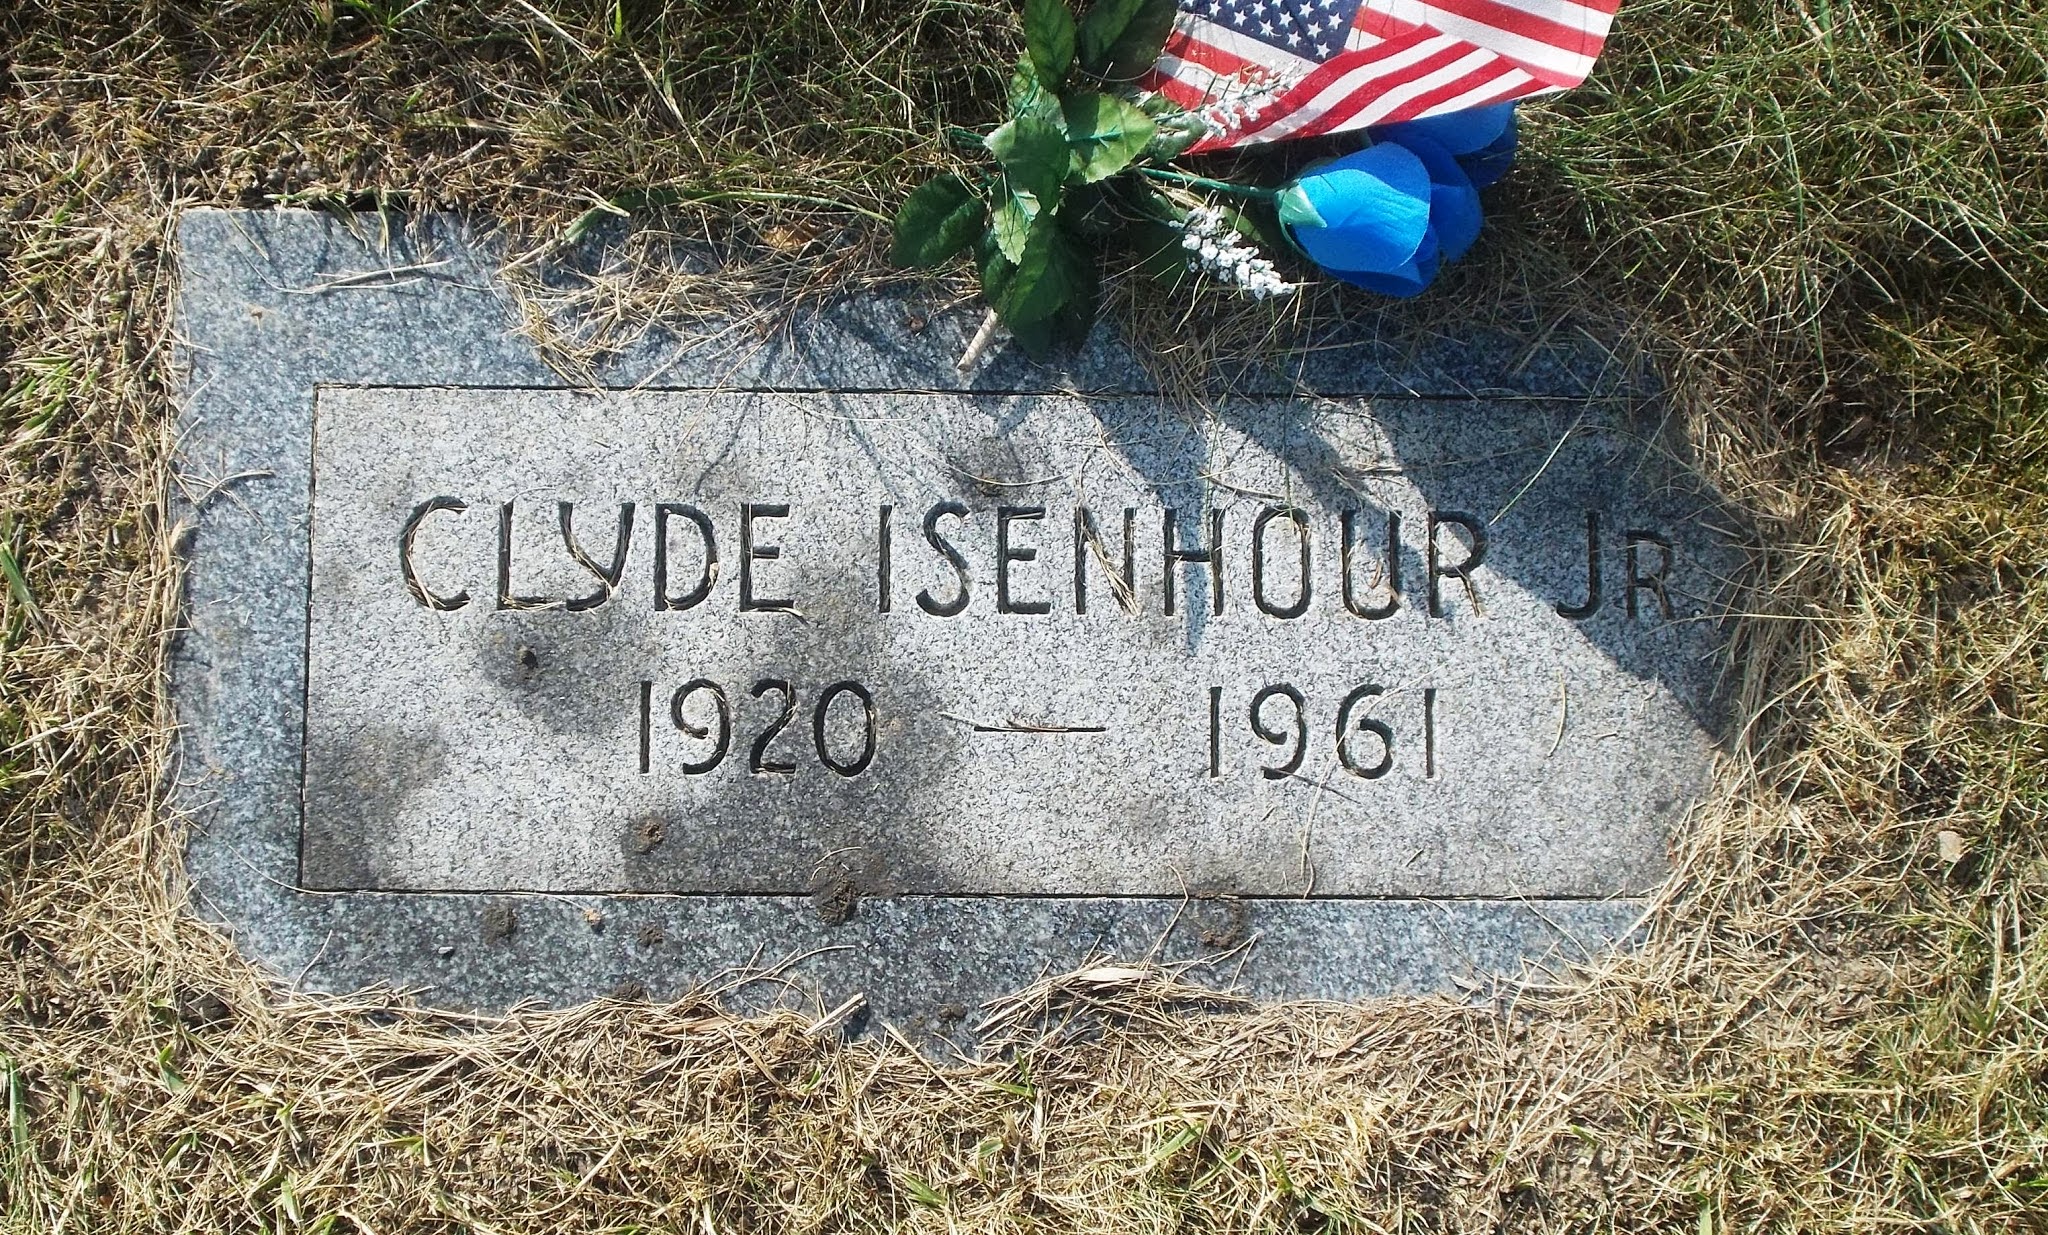 Clyde Isenhour, Jr